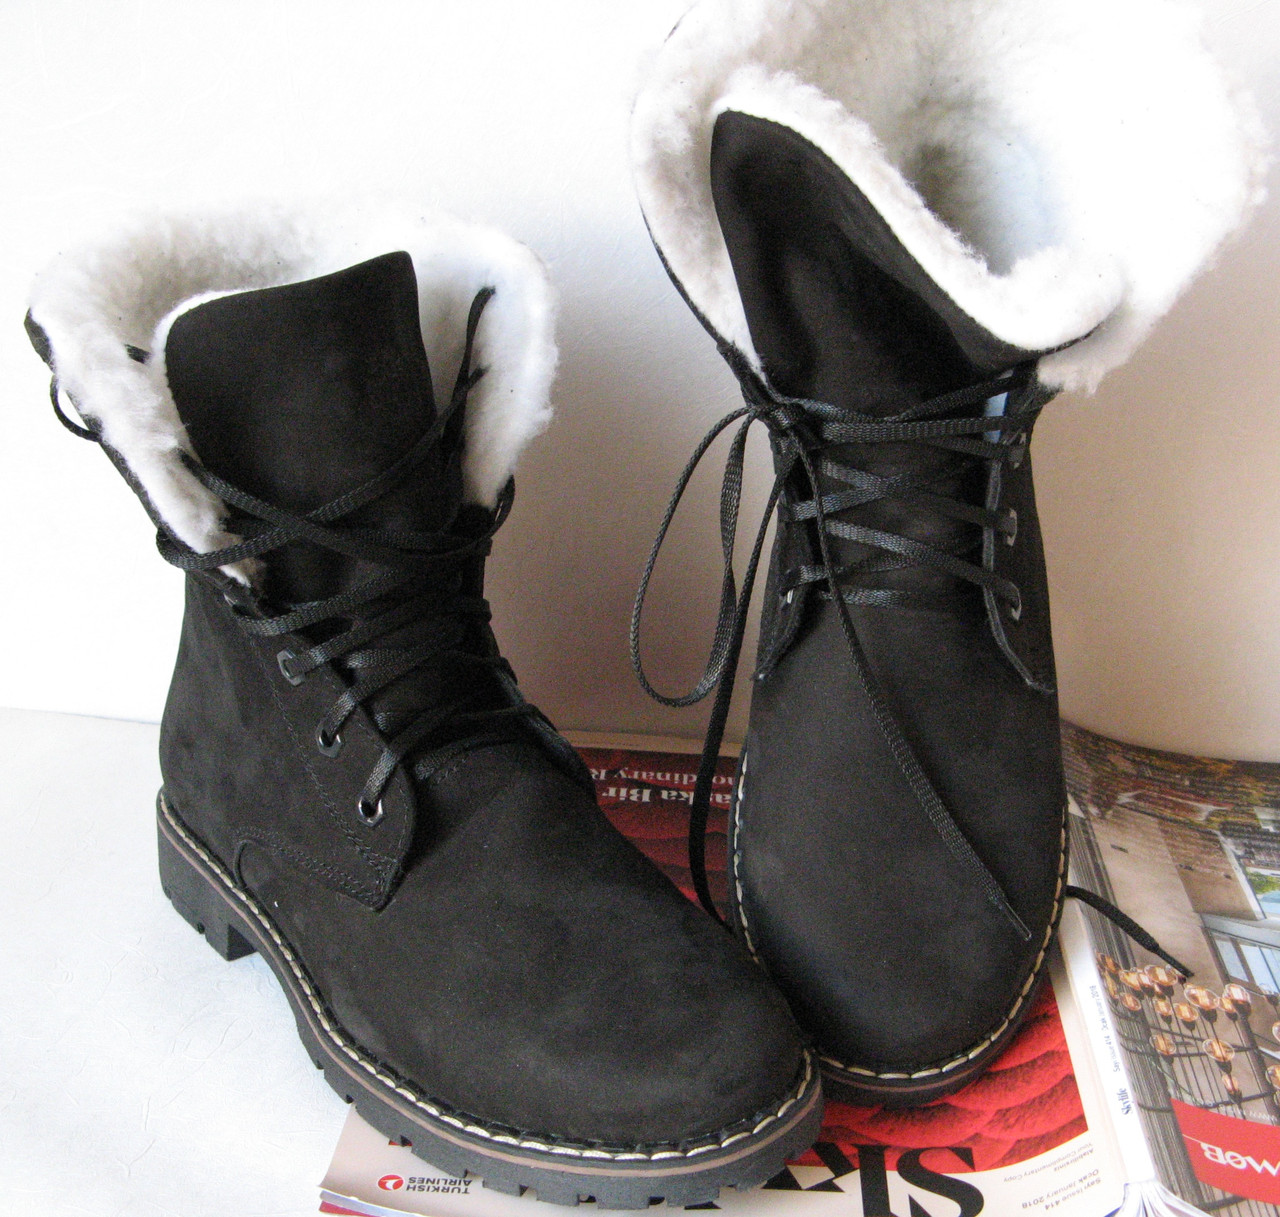 Суперзимові стильні жіночі чоботи чорні черевики Timberland теплі нубук шкіра